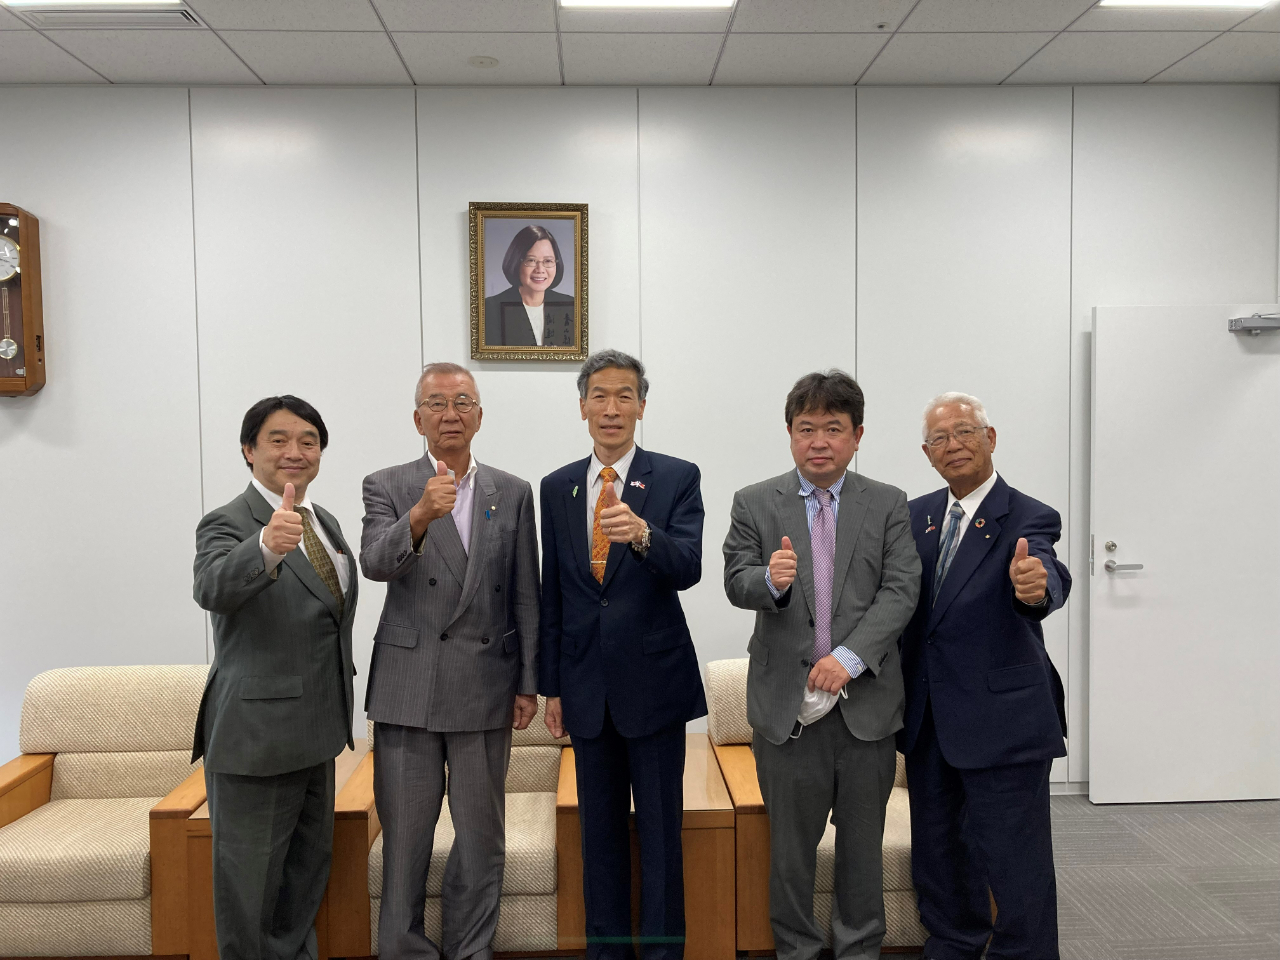 左至右: 杉中先生、辻井副會長、向處長、鈴木先生、永野前會長